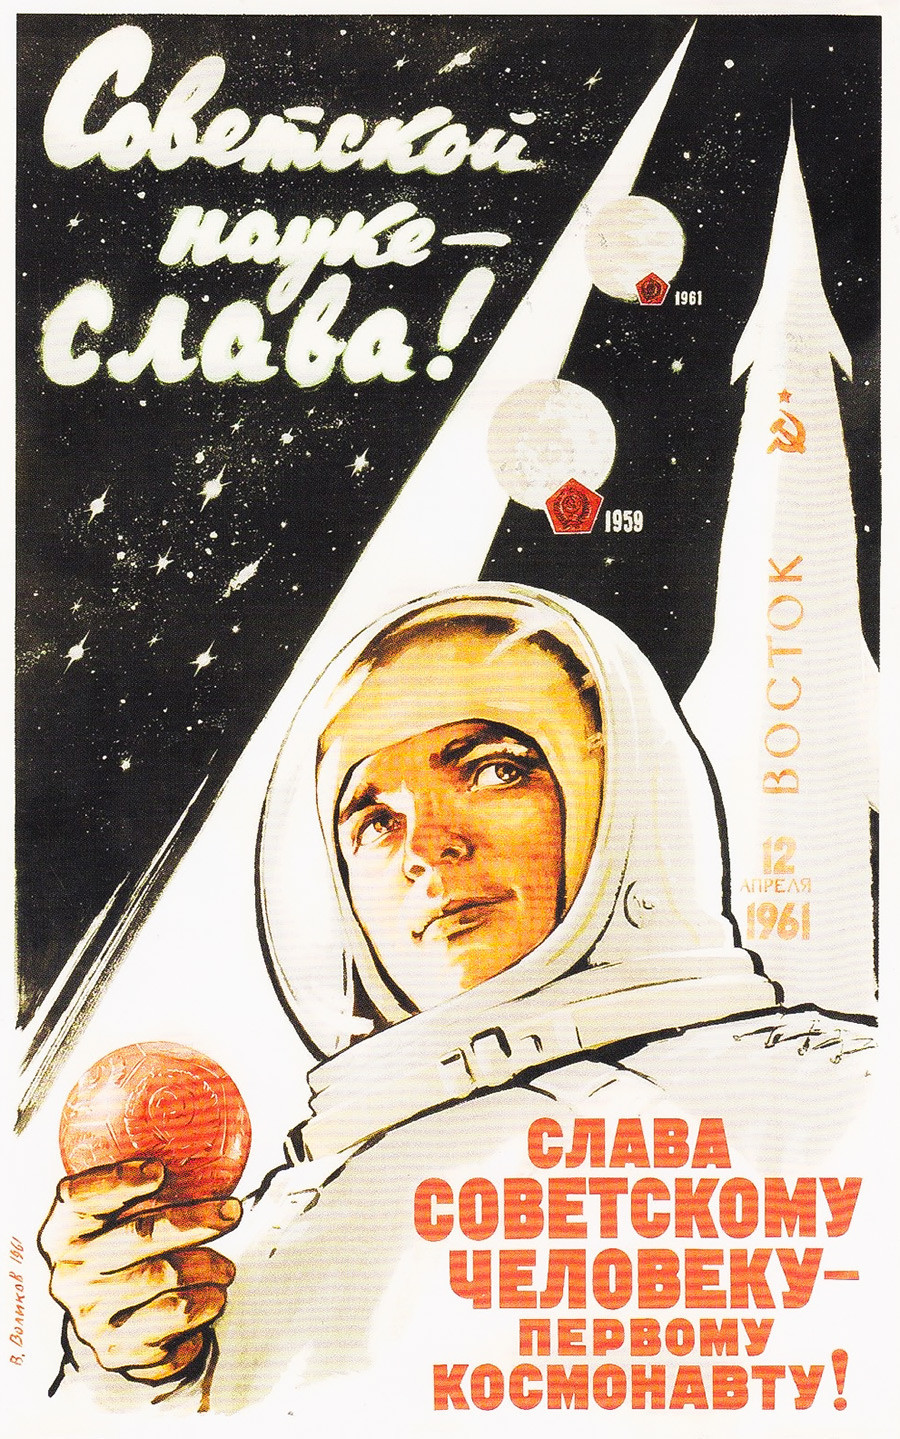 Gloire à la science soviétique ! Gloire à l’homme soviétique, le premier cosmonaute !